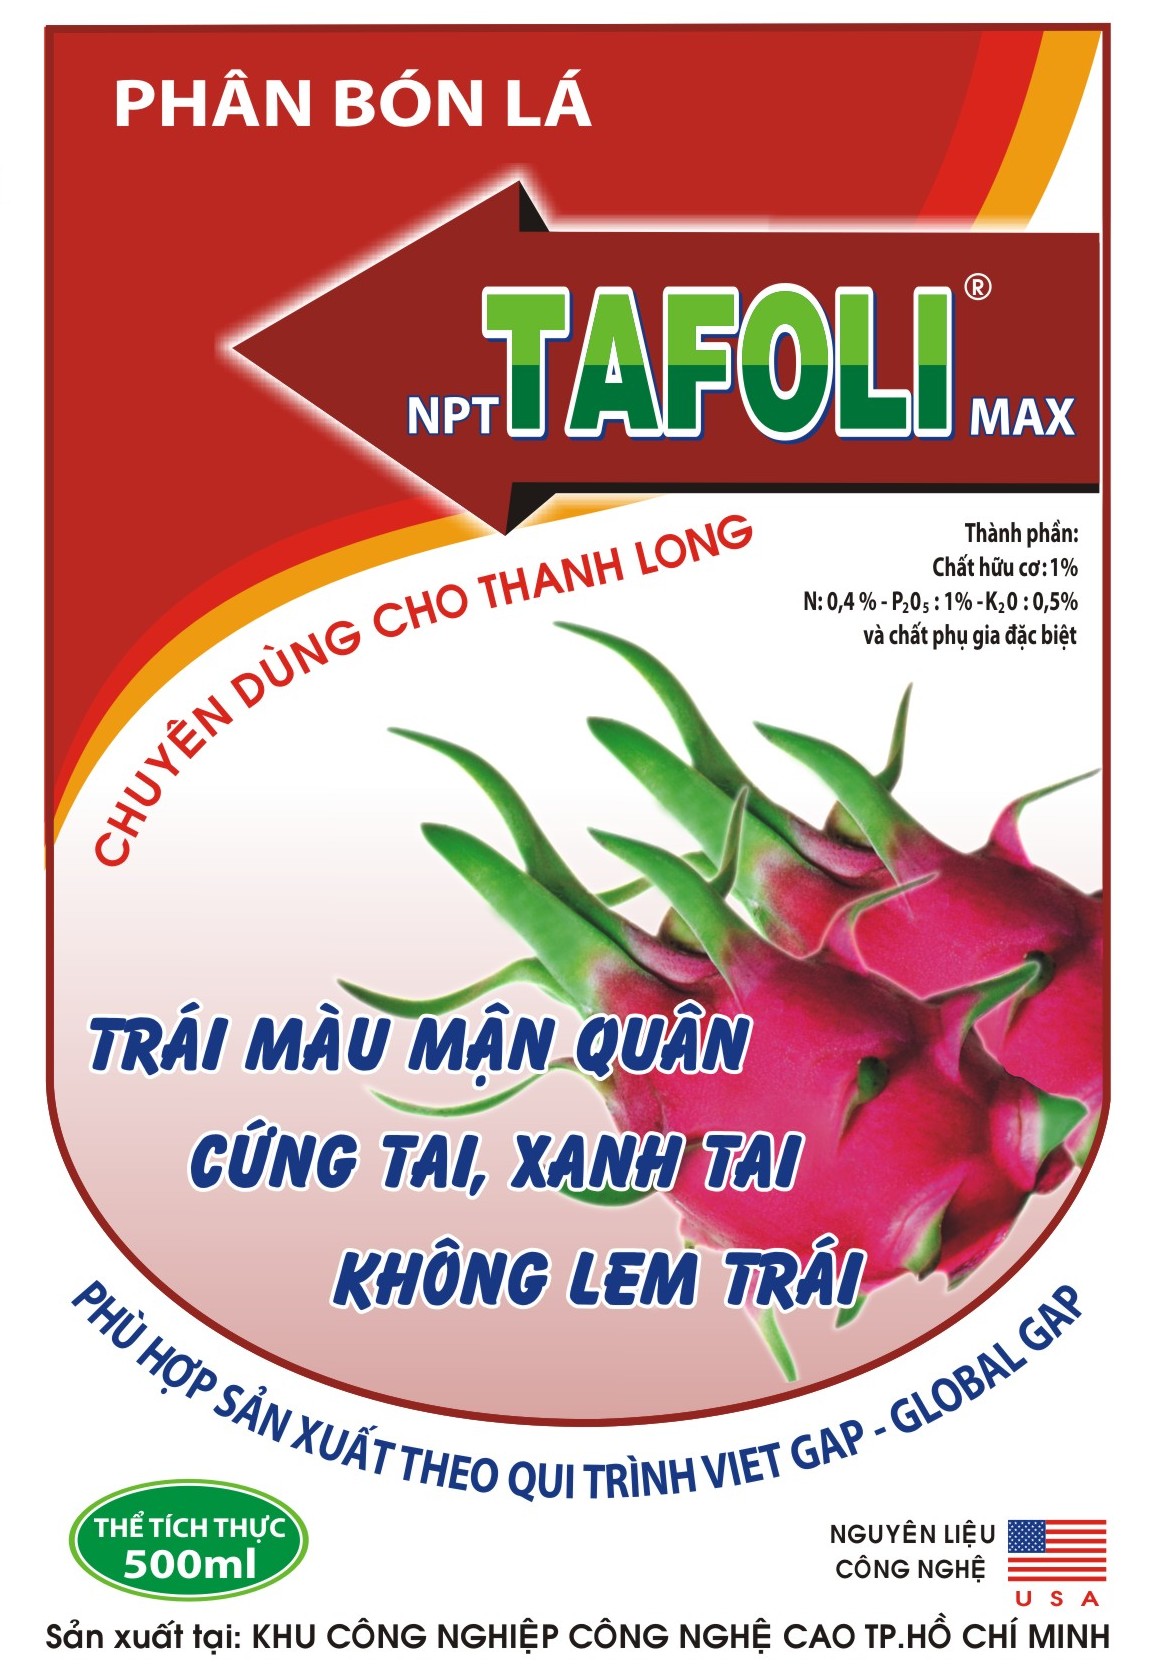 TAFOLImax cho cây Thanh Long